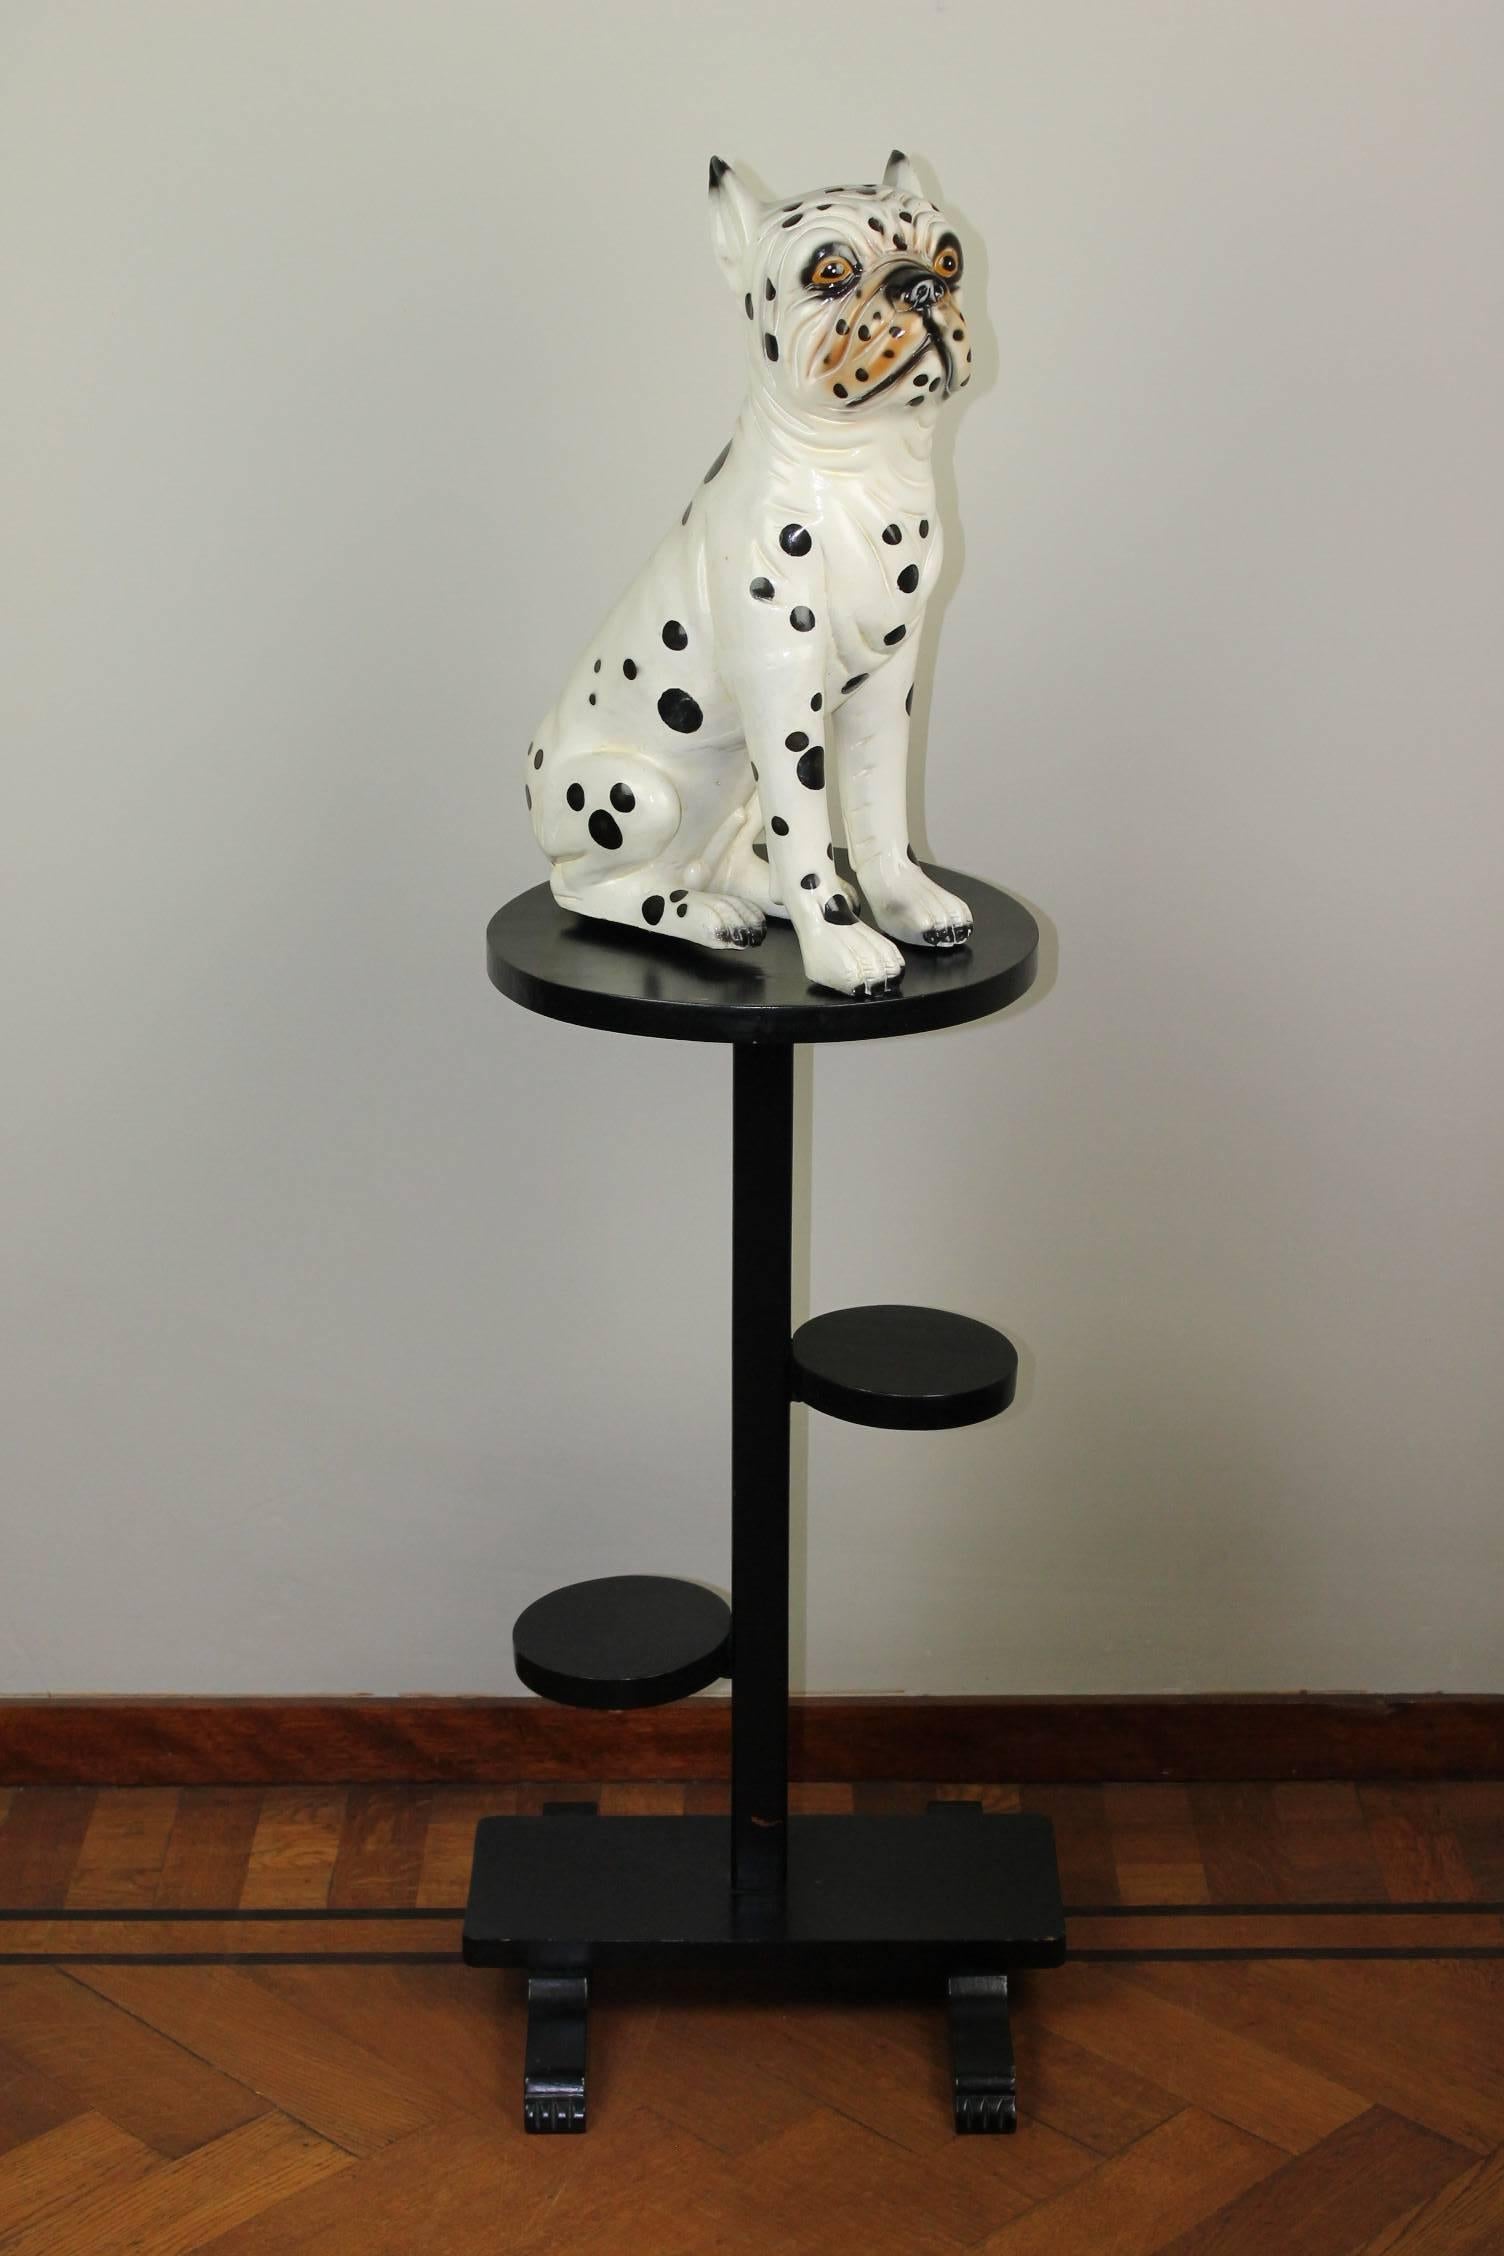 Handbemalte Hundeskulptur aus Keramik aus den 1960er Jahren.
Diese Vintage Keramik Welpe Hund - Dogge Hund Welpe  - kleiner Dalmatiner Hund - Dalmatiner Bulldogge 
Die Skulptur ist so bezaubernd. Diese Hundefigur hat ein weißes Fell mit schwarzen